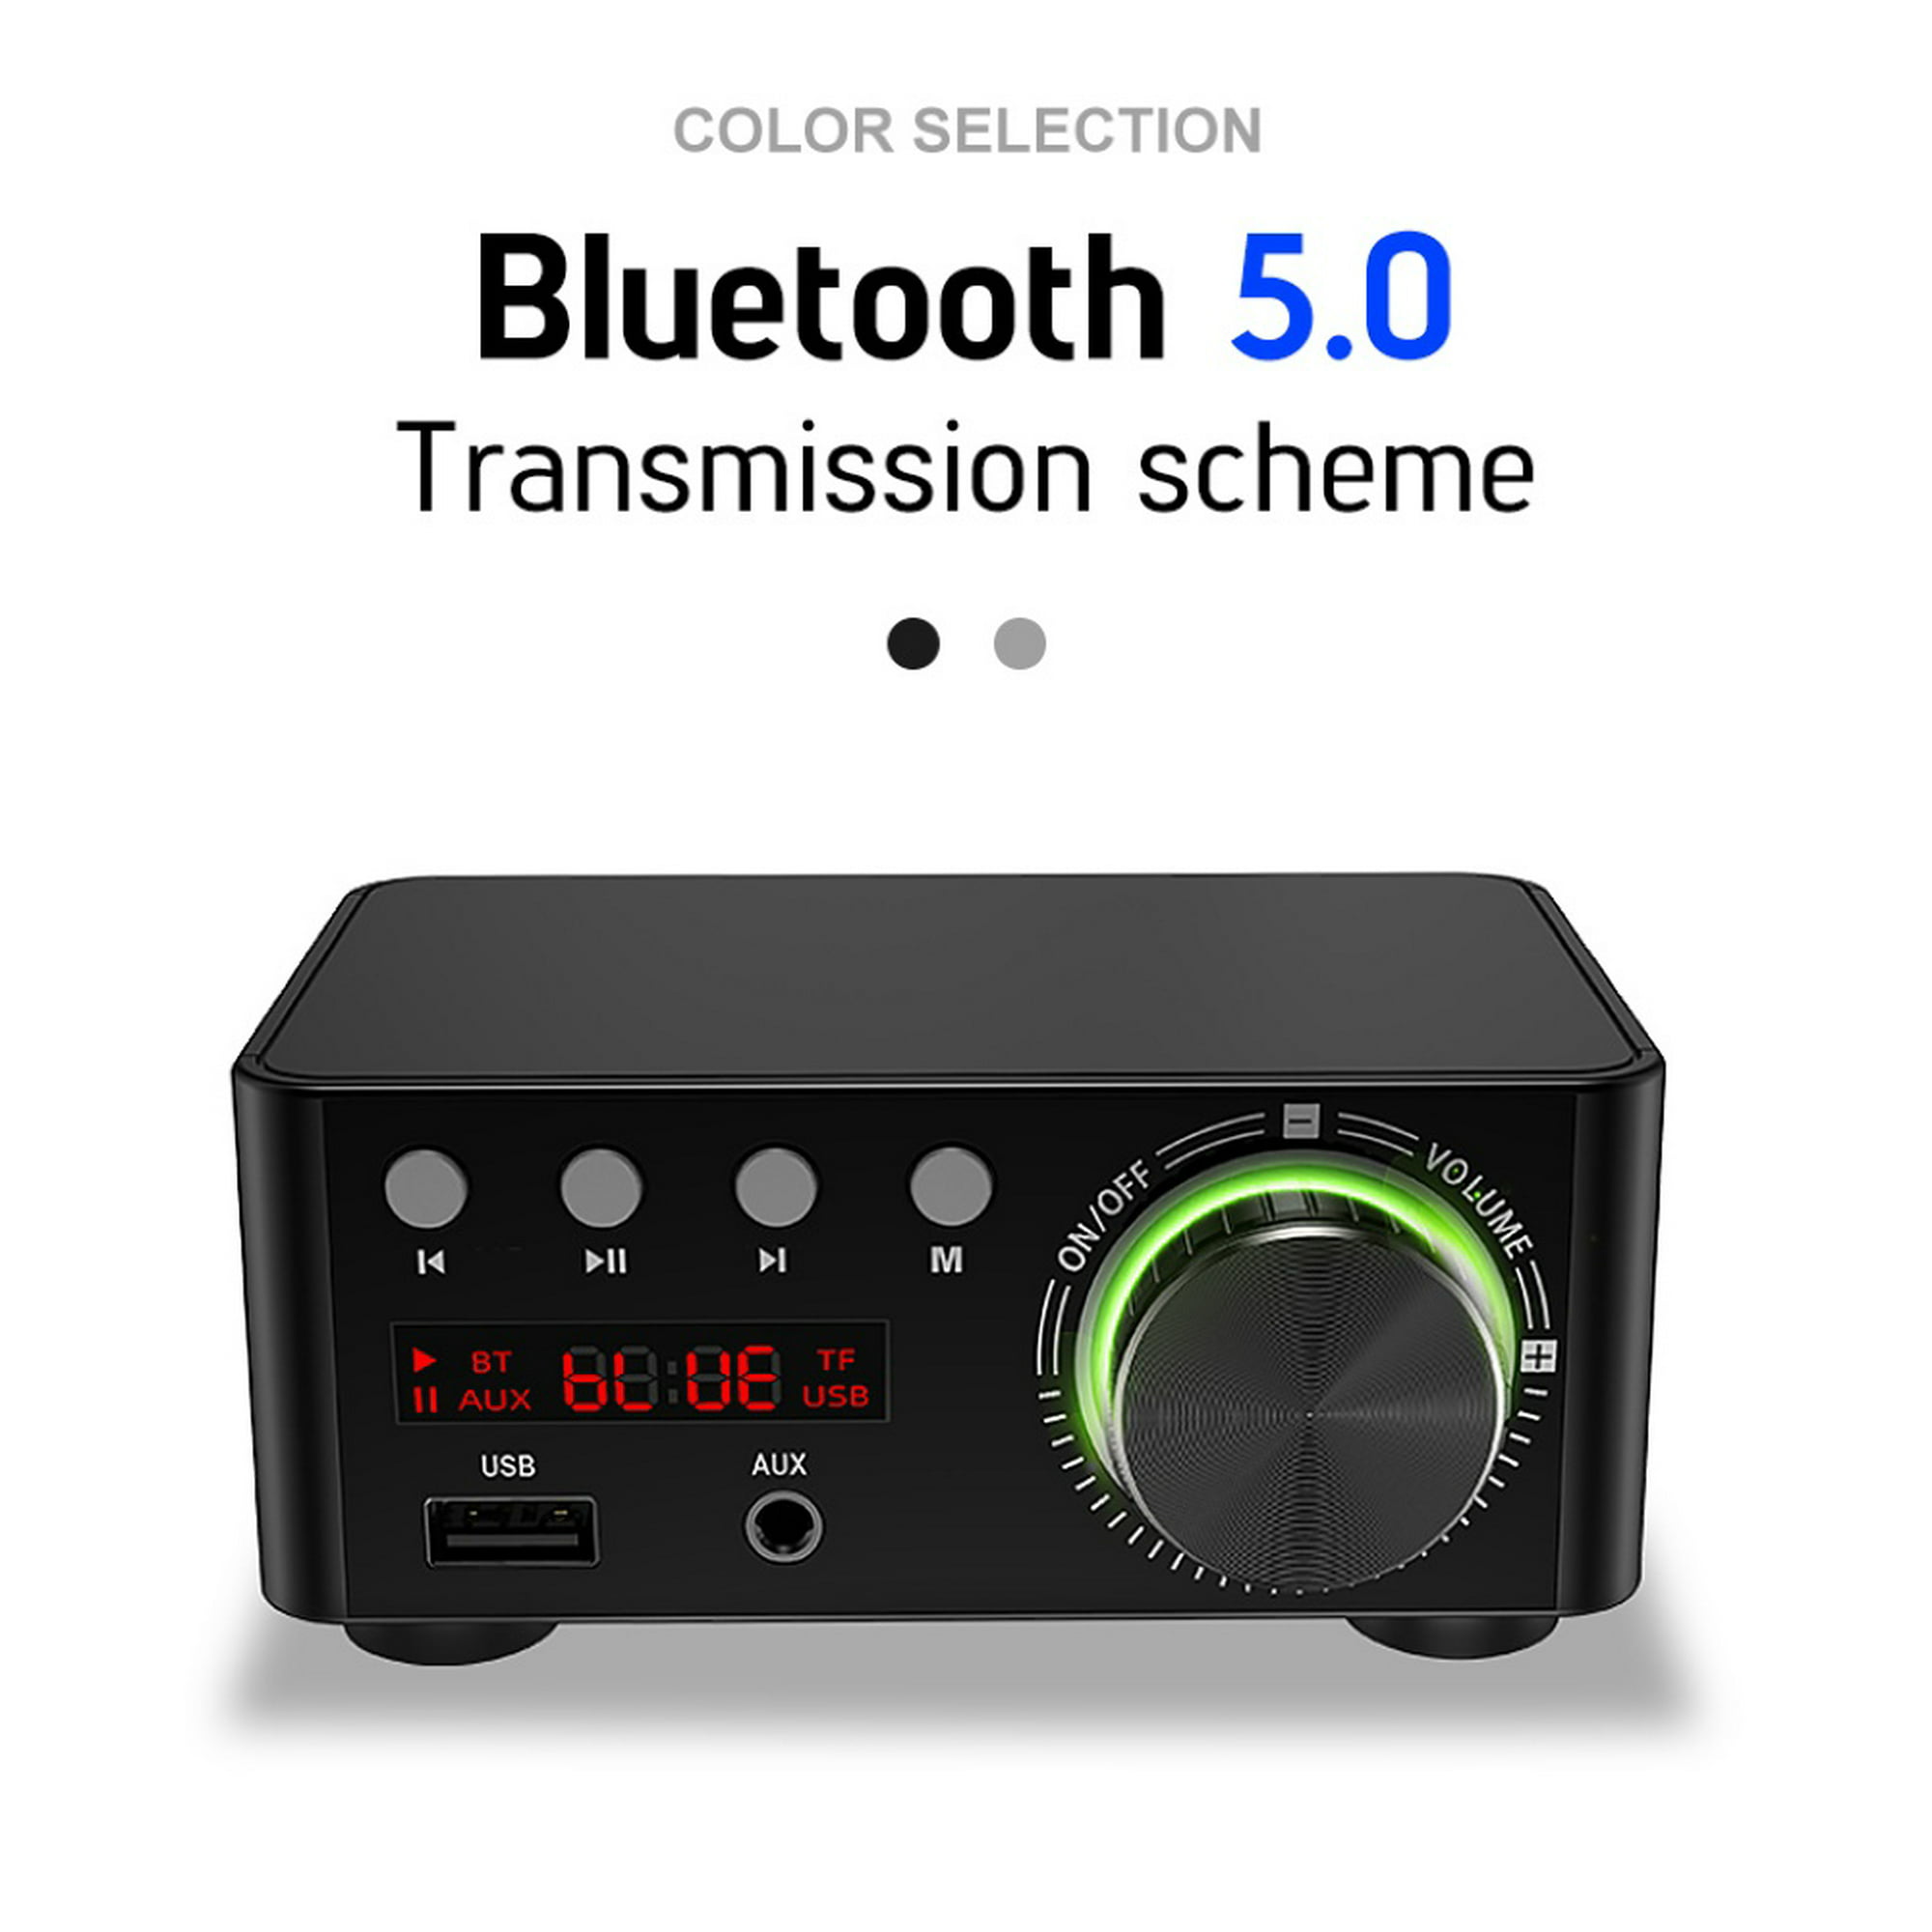 Yoidesu Amplificador Audio Coche Mini Amplificador Estéreo para Auto y  Casa， lp-838 Amplificador de Potencia de Audio Mini HiFi 2.1 Estéreo Bass  Car Amplificador Digital(Plata) EOTVIA No